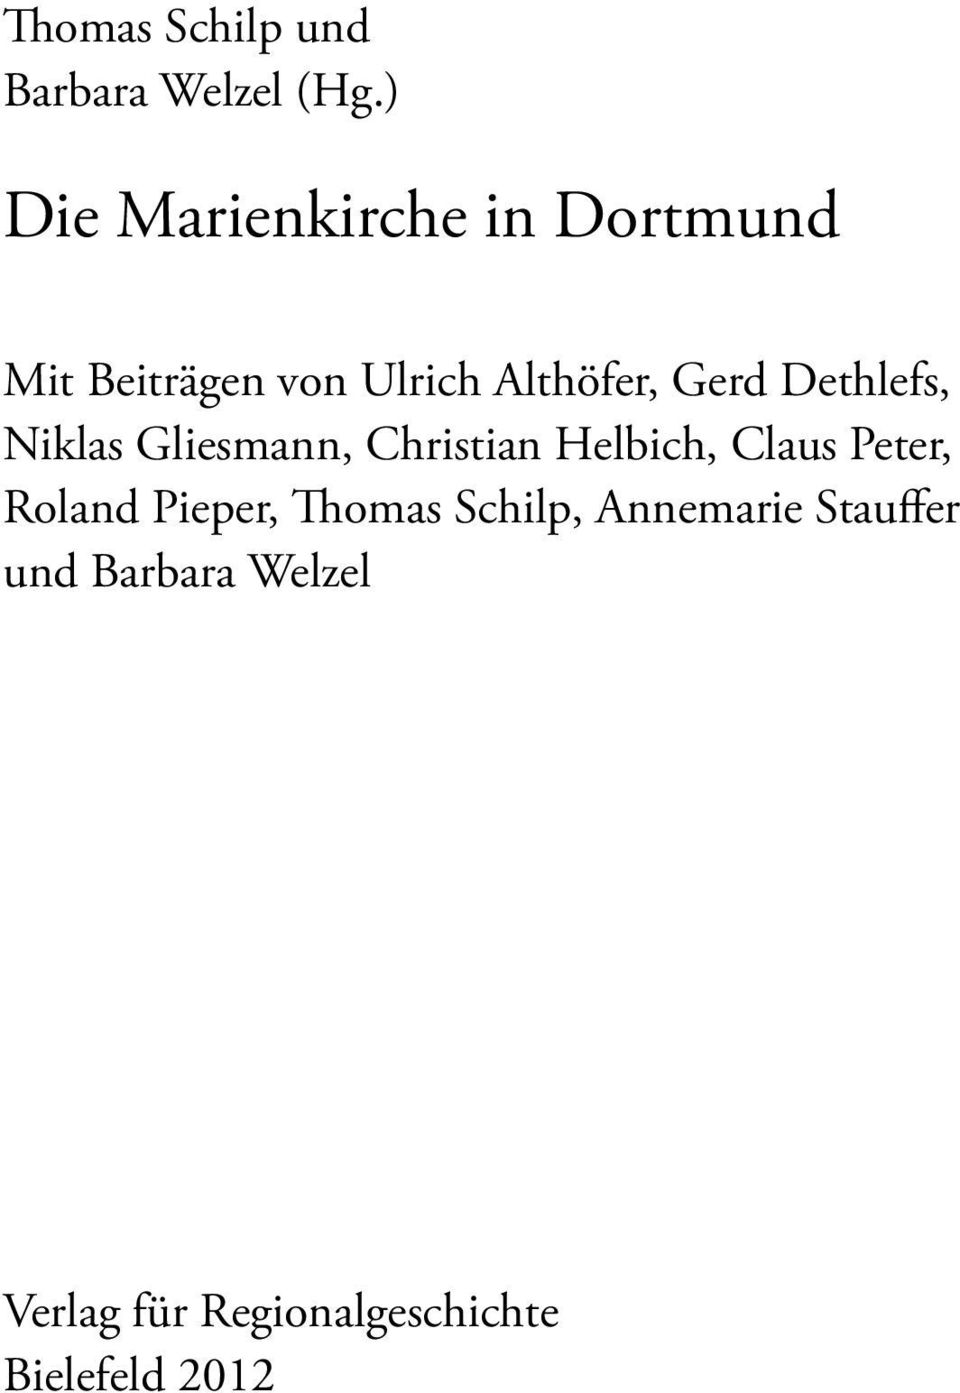 Gerd Dethlefs, Niklas Gliesmann, Christian Helbich, Claus Peter,